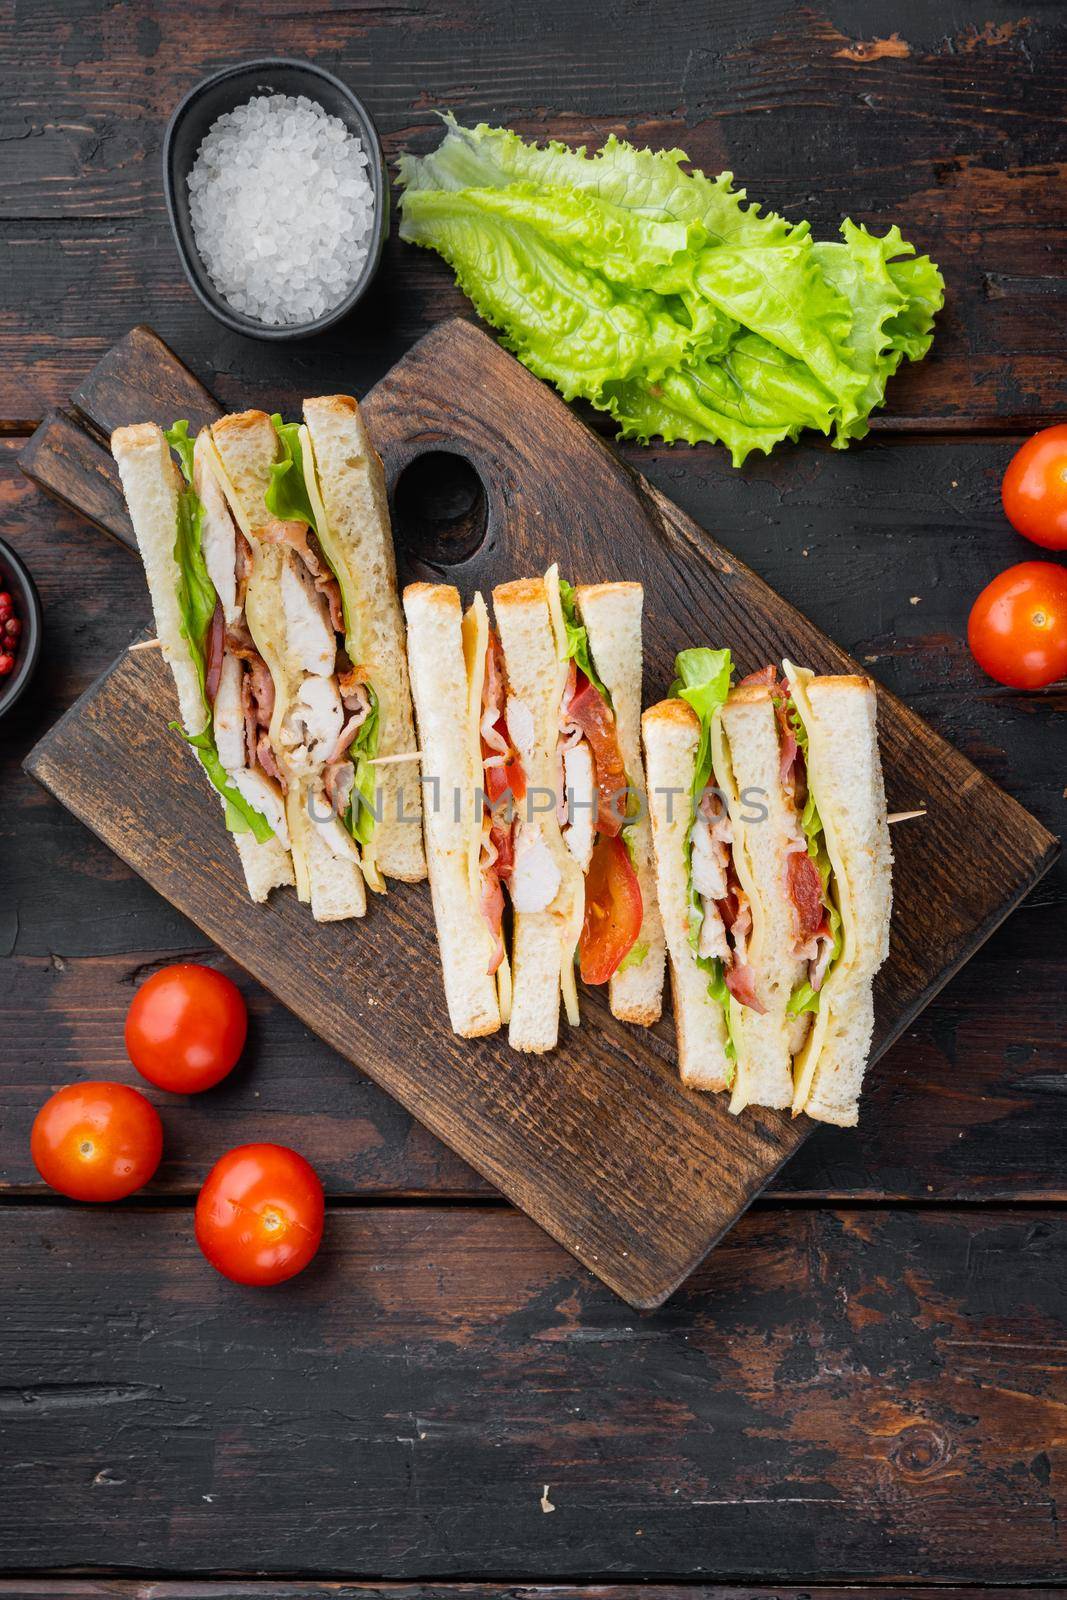 Homemade turkey sandwich, on dark wooden background, top view by Ilianesolenyi